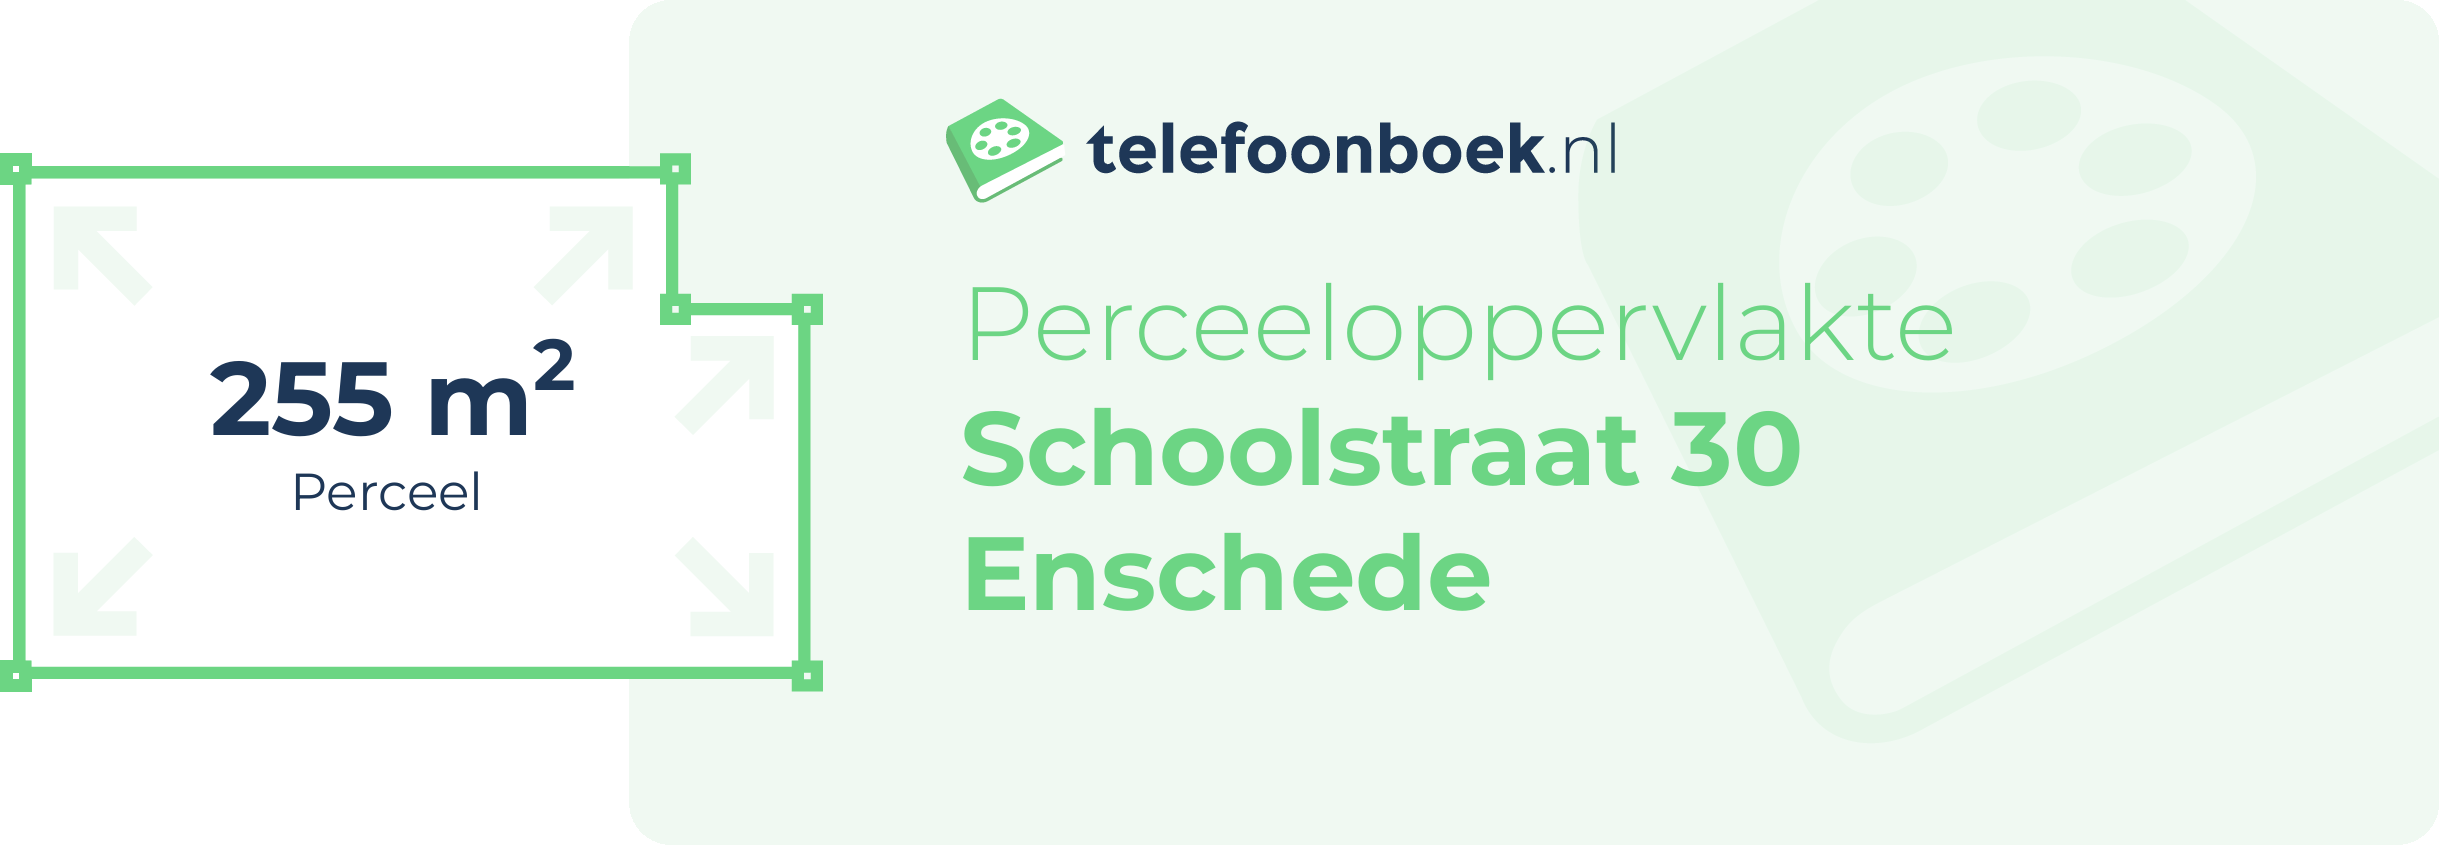 Perceeloppervlakte Schoolstraat 30 Enschede